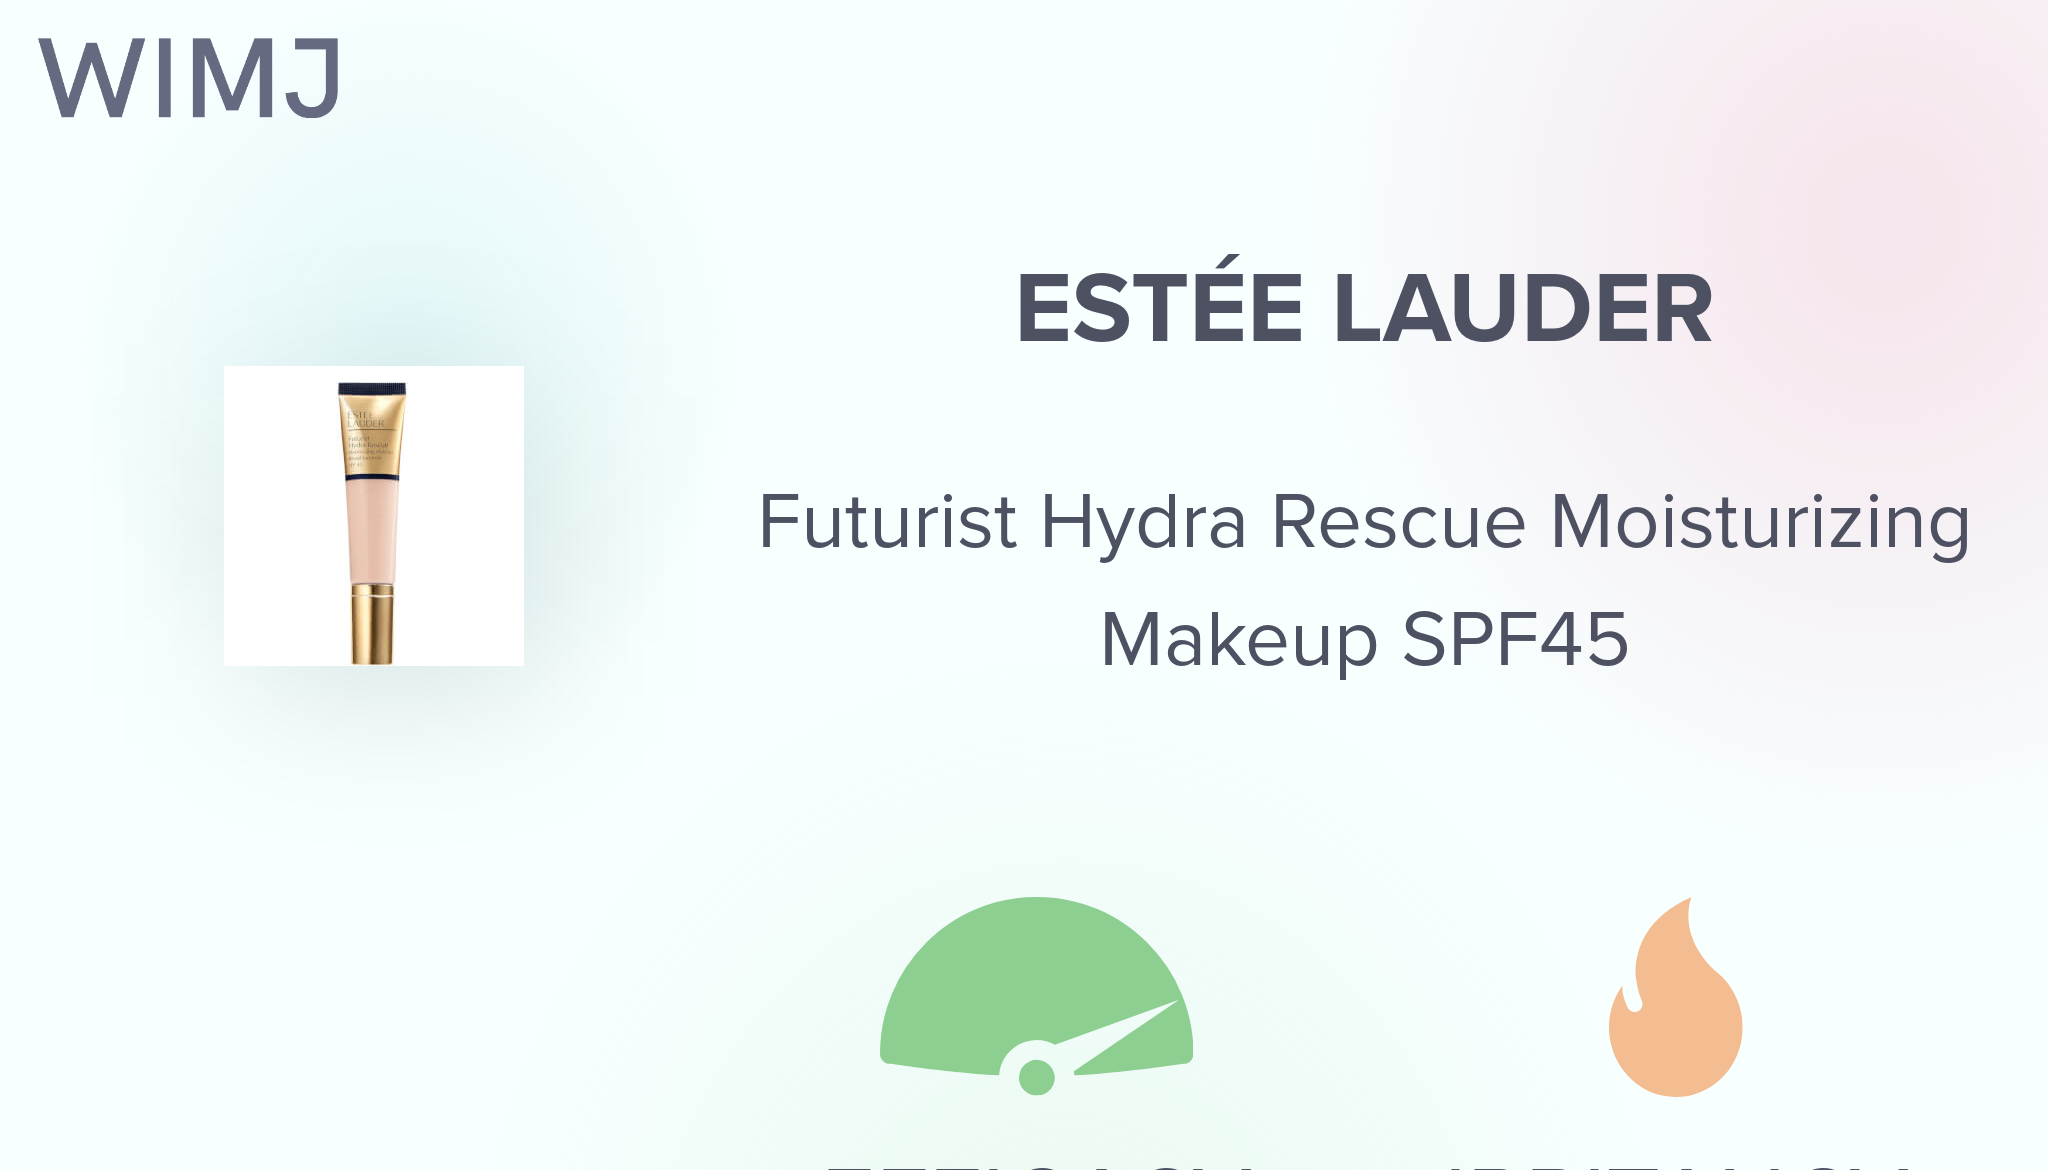 Estee Lauder Futurist Hydra Rescue Moisturizing Makeup Spf 45